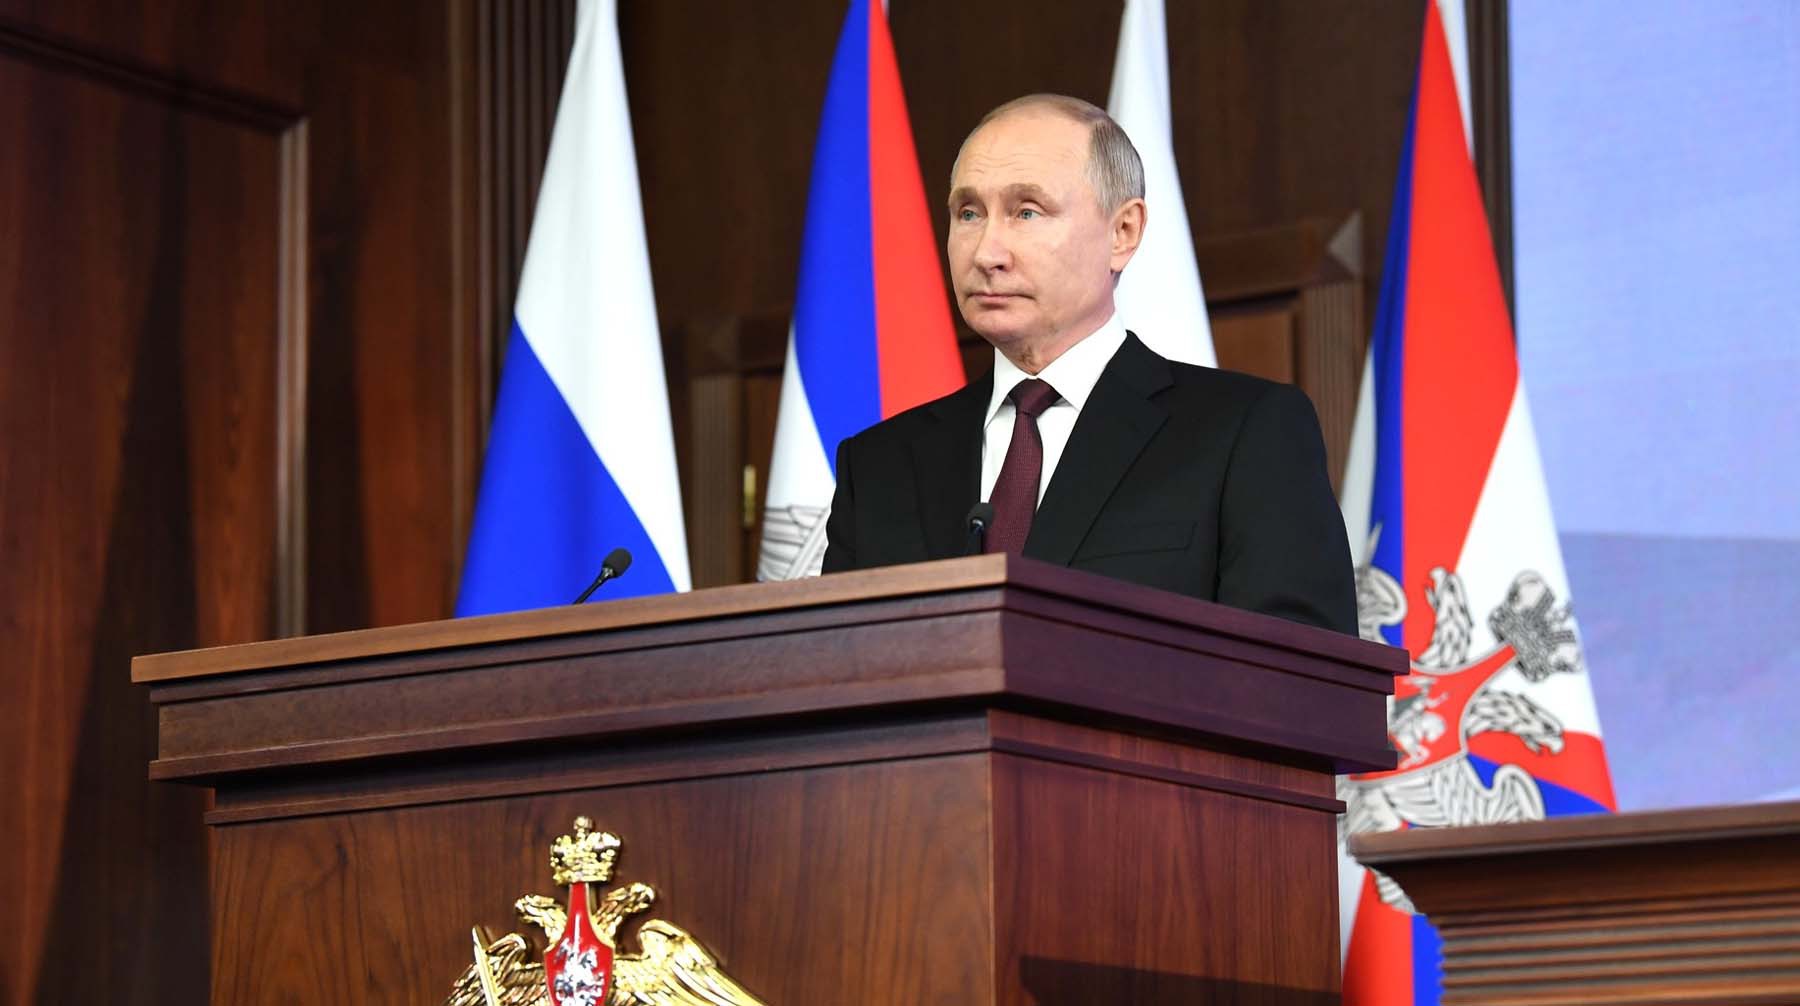 Dailystorm - Ветераны войны, экс-президенты и дороги: Путин подписал пакет законов